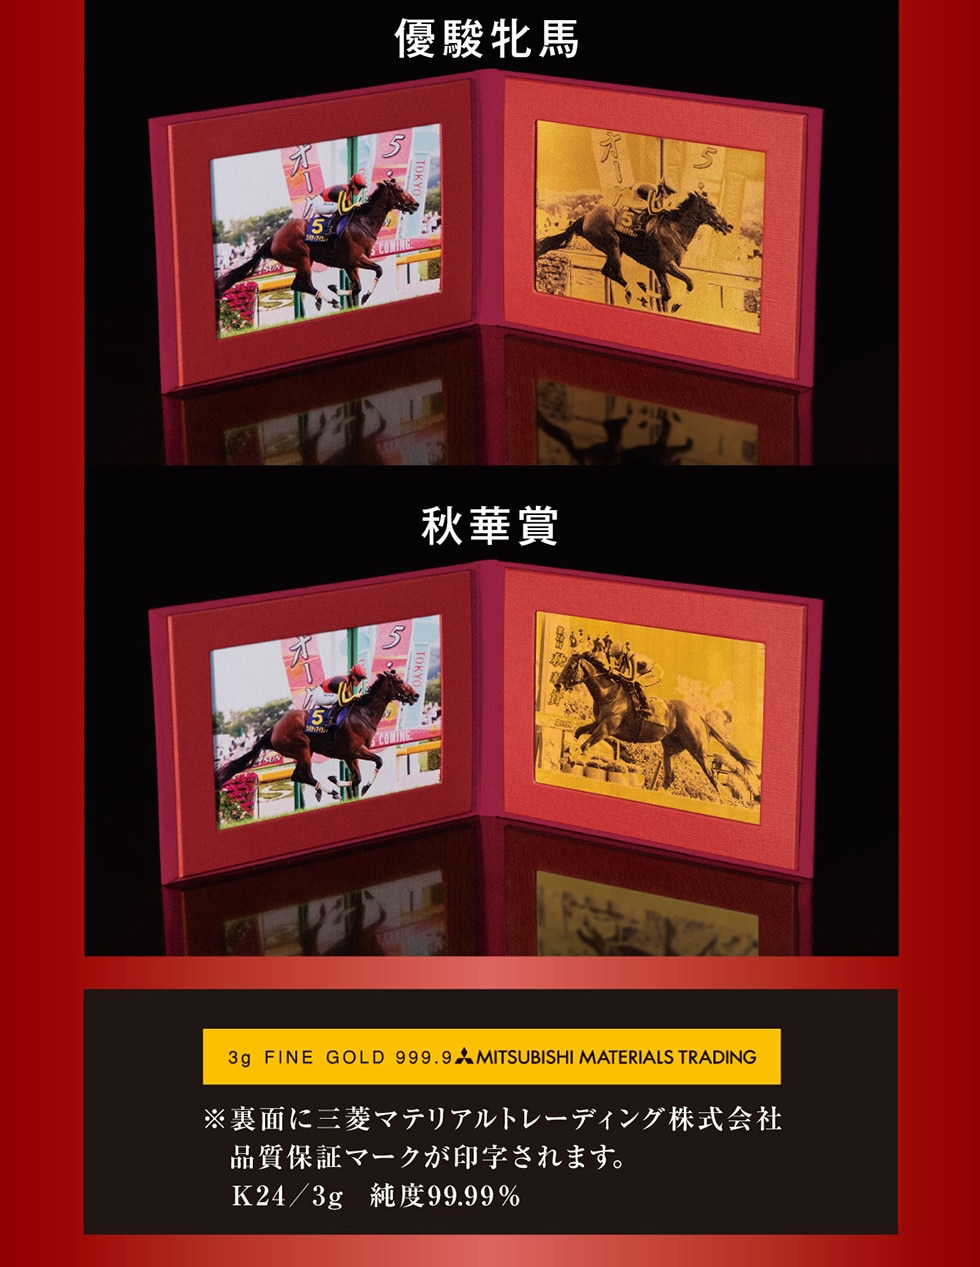 優駿牝馬 秋華賞 3g FINE GOLD 999.9 MITSUBISHI MATERIALS TRADING※裏面に三菱マテリアルトレーディング株式会社品質保証マークが印字されます。K24/3g 純度99.99%